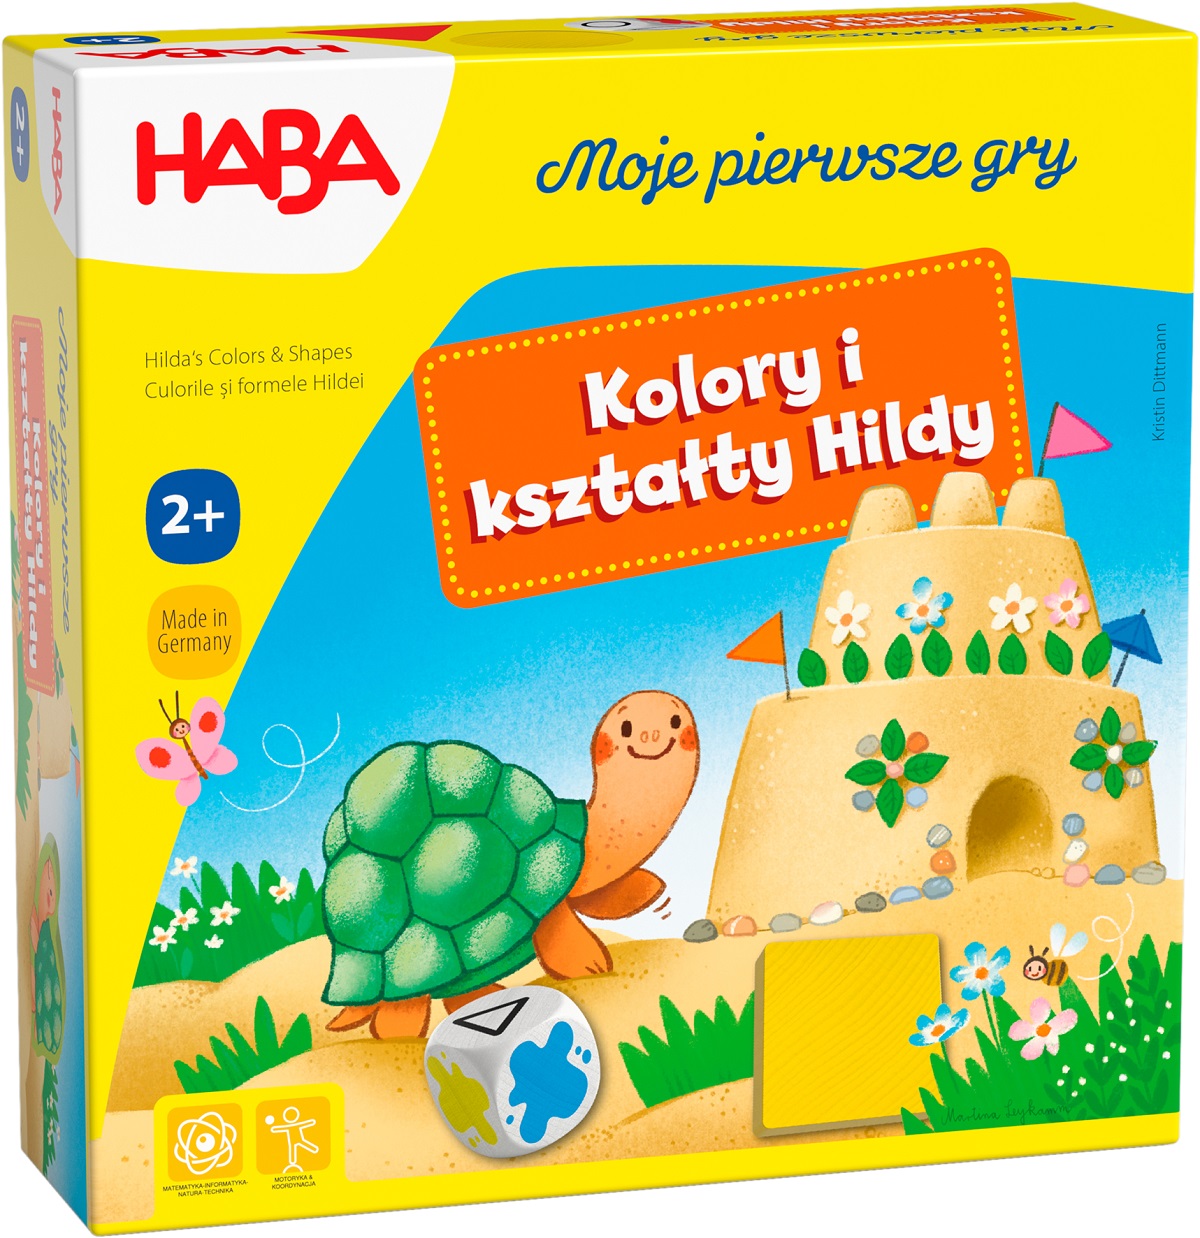 Moje pierwsze gry Kolory i kształty Hildy - edycja polska